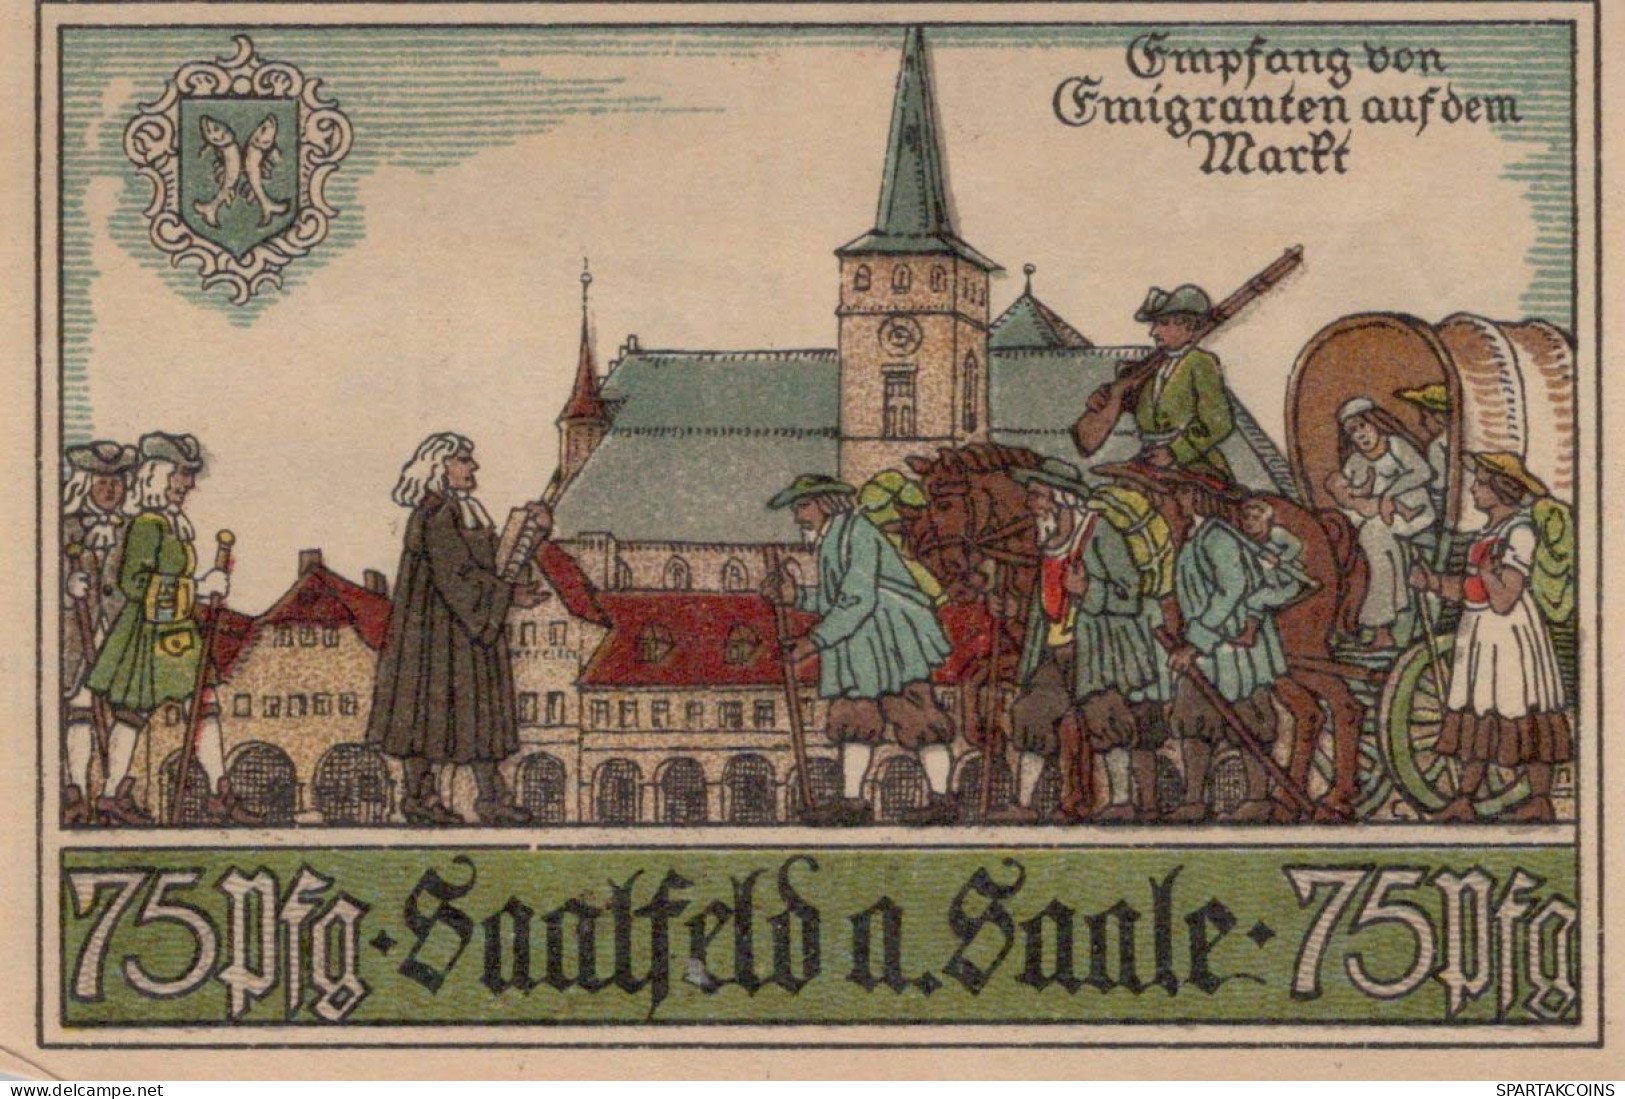 75 PFENNIG 1921 Stadt SAALFELD Thuringia UNC DEUTSCHLAND Notgeld Banknote #PJ010 - Lokale Ausgaben